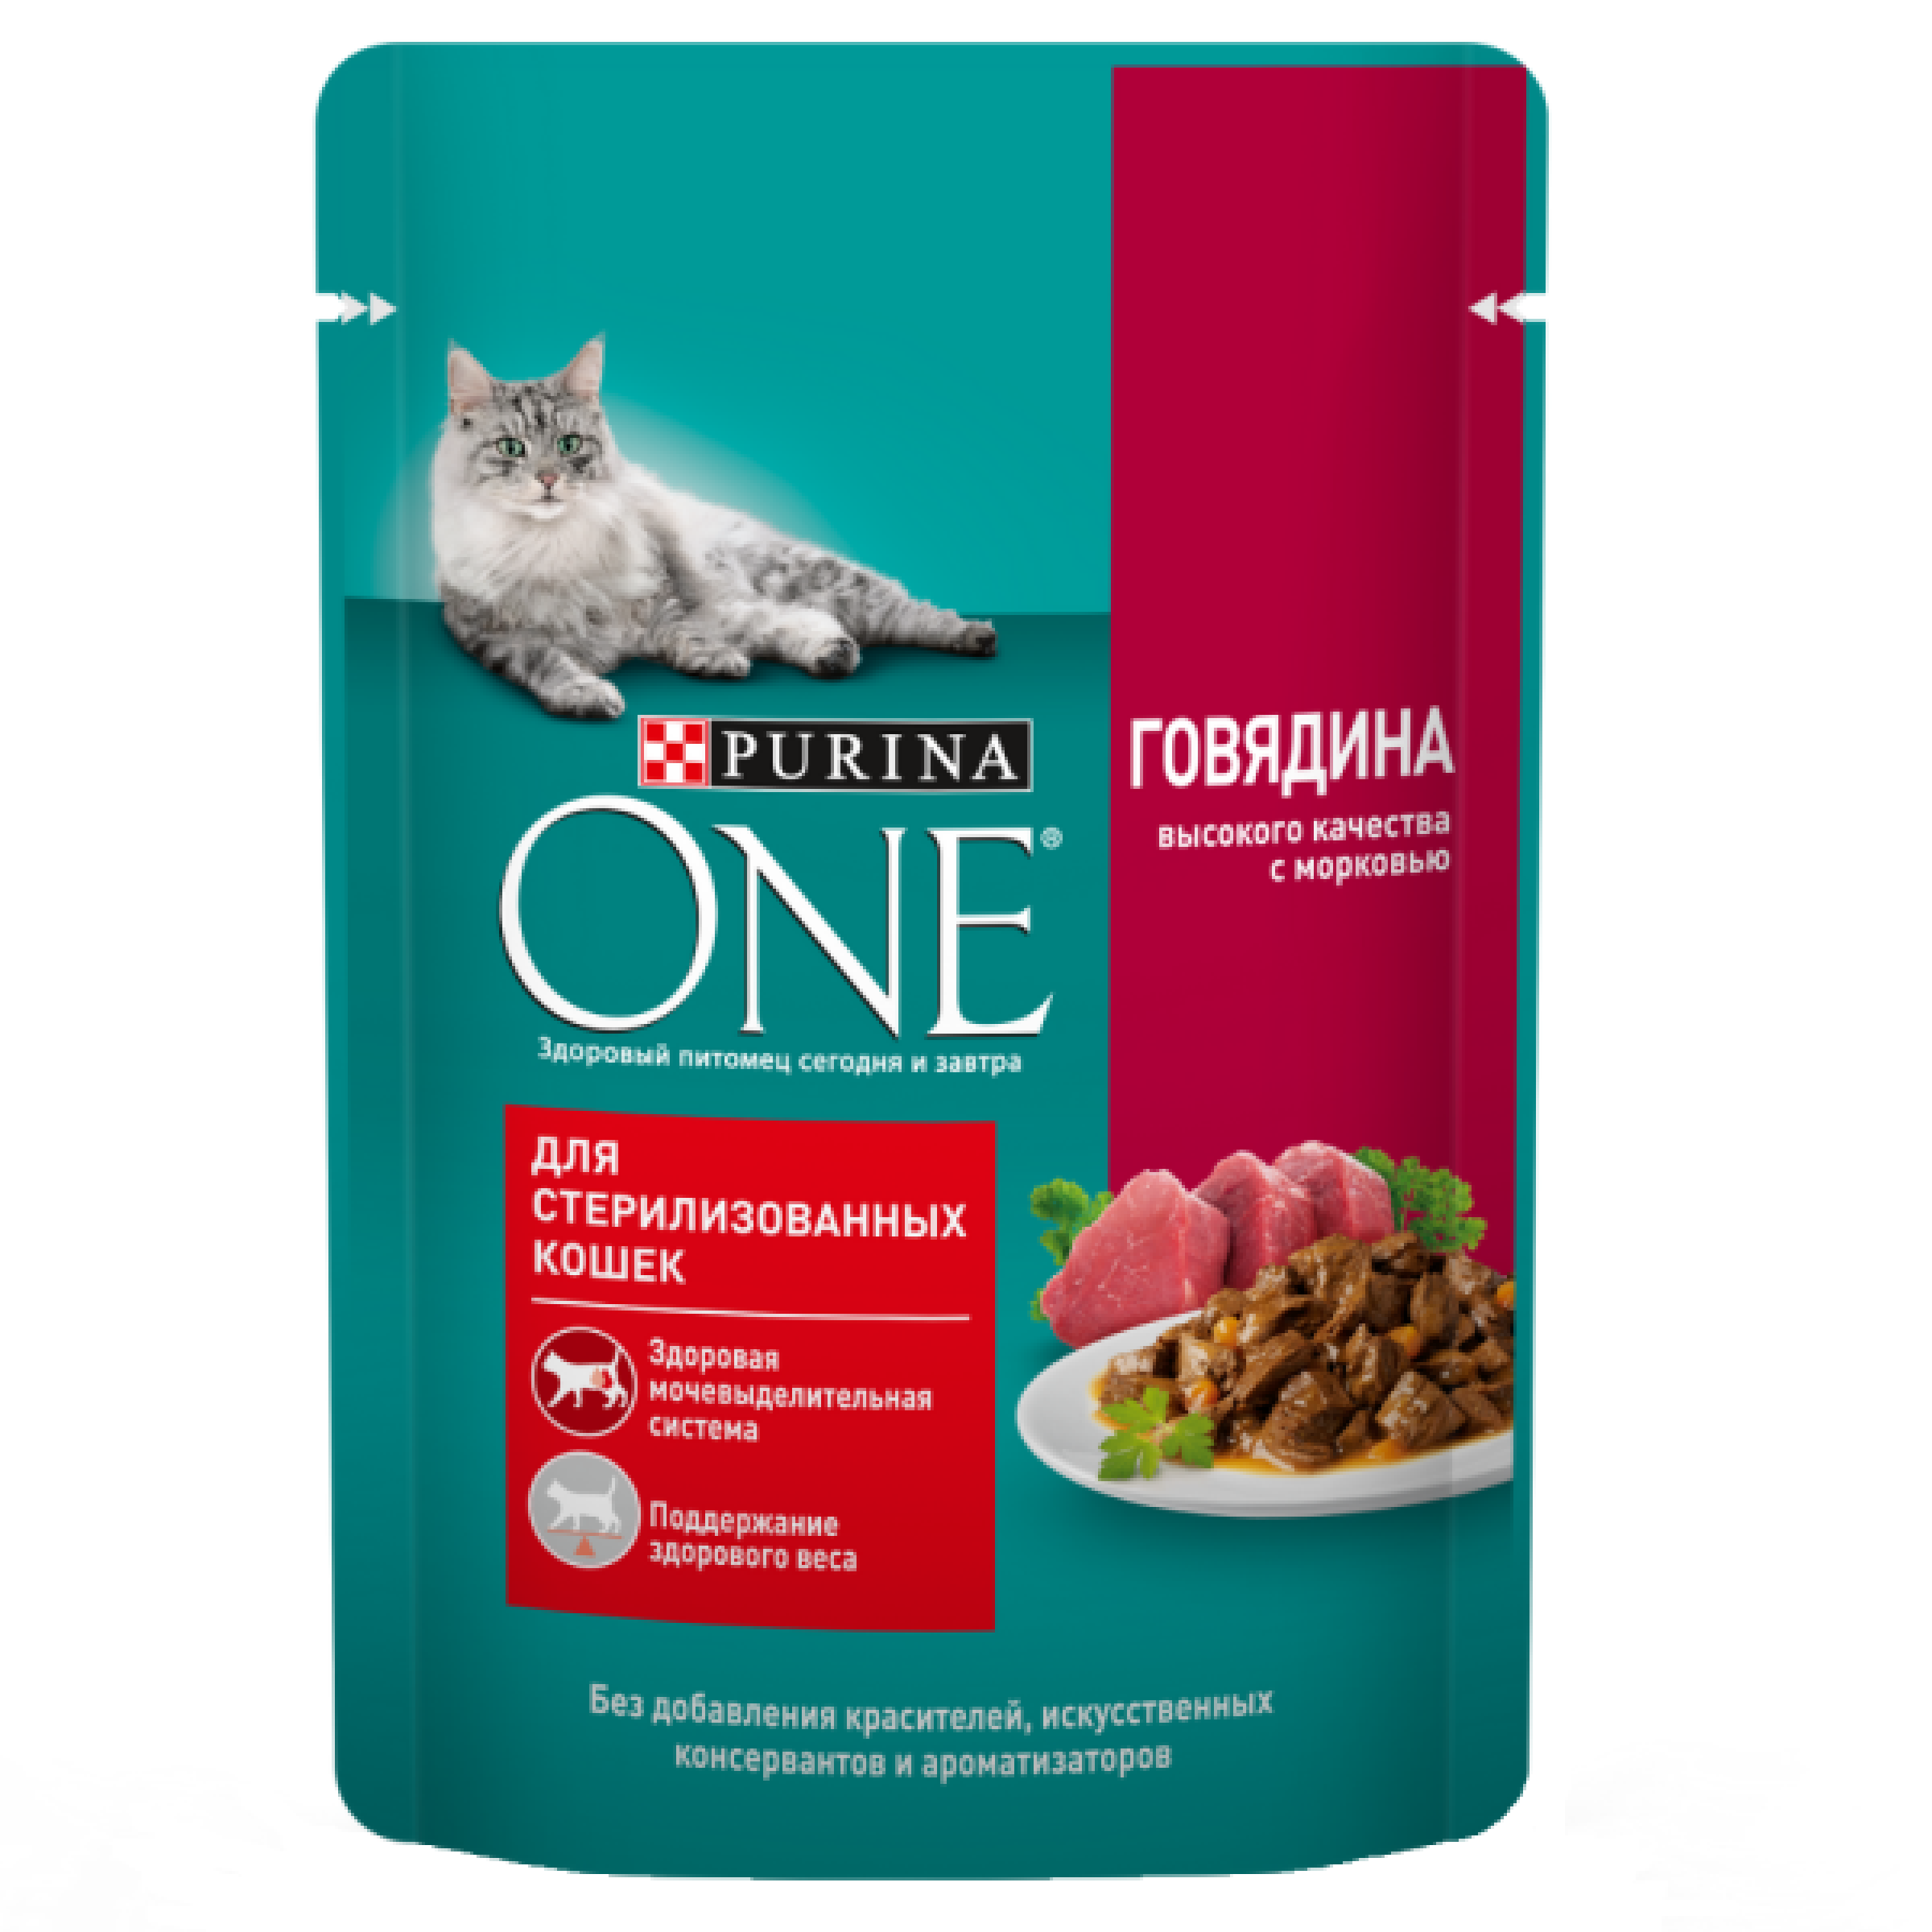 Влажный корм Purina One для стерилизованных кошек с говядиной и морковью, 75 г